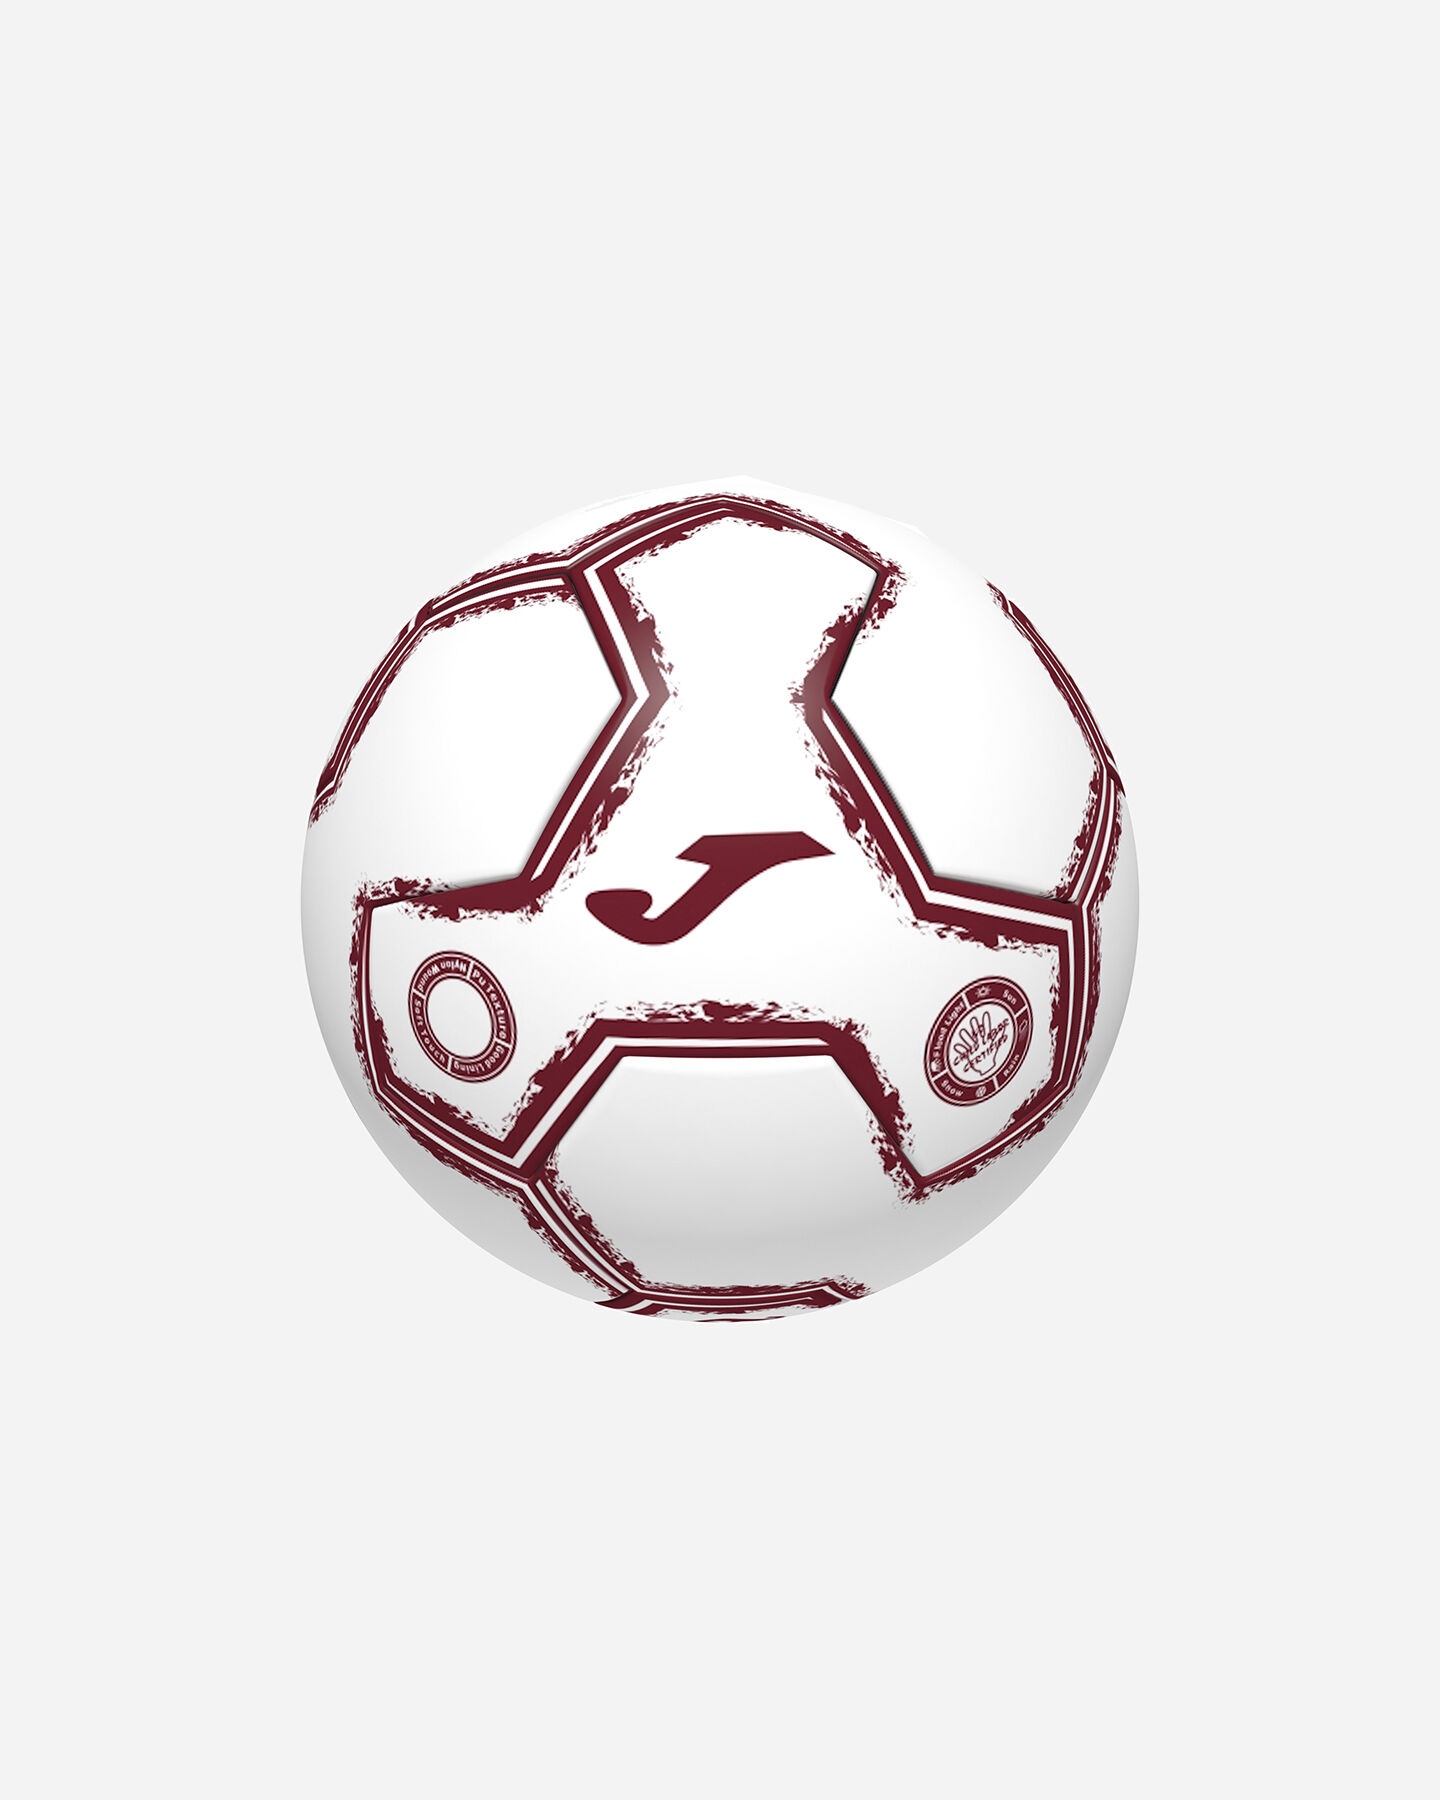  Pallone calcio JOMA MINI TORINO 21-22 MIS.1 S4099191|UNI|T.1 scatto 1